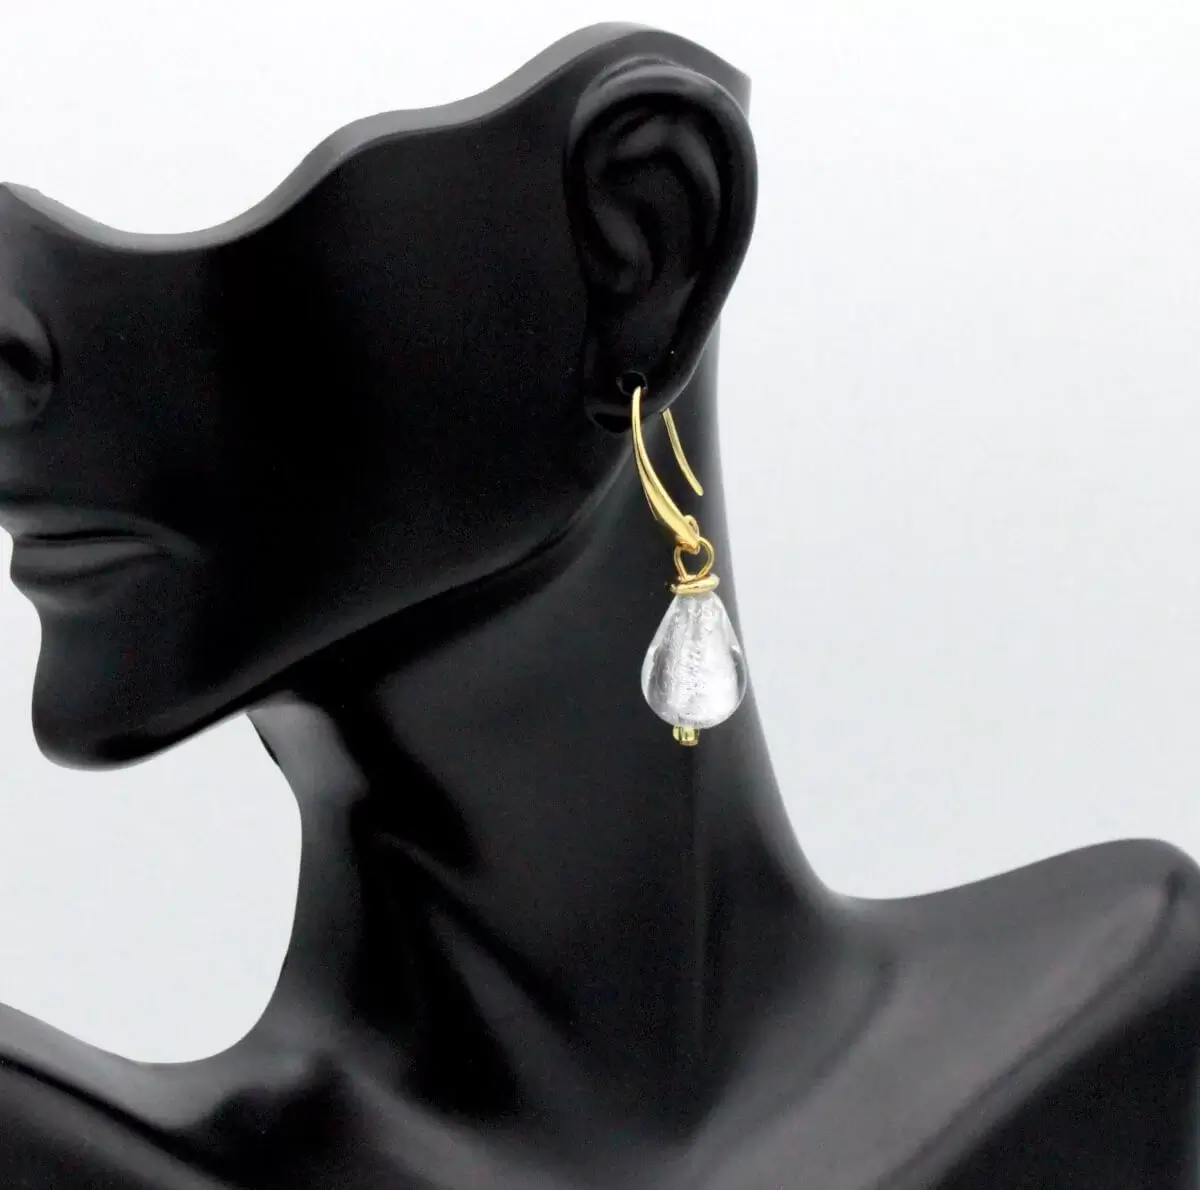 Silver Murano glass teardrop earring 1 1/2 inch teardrop shape in gold tone wires